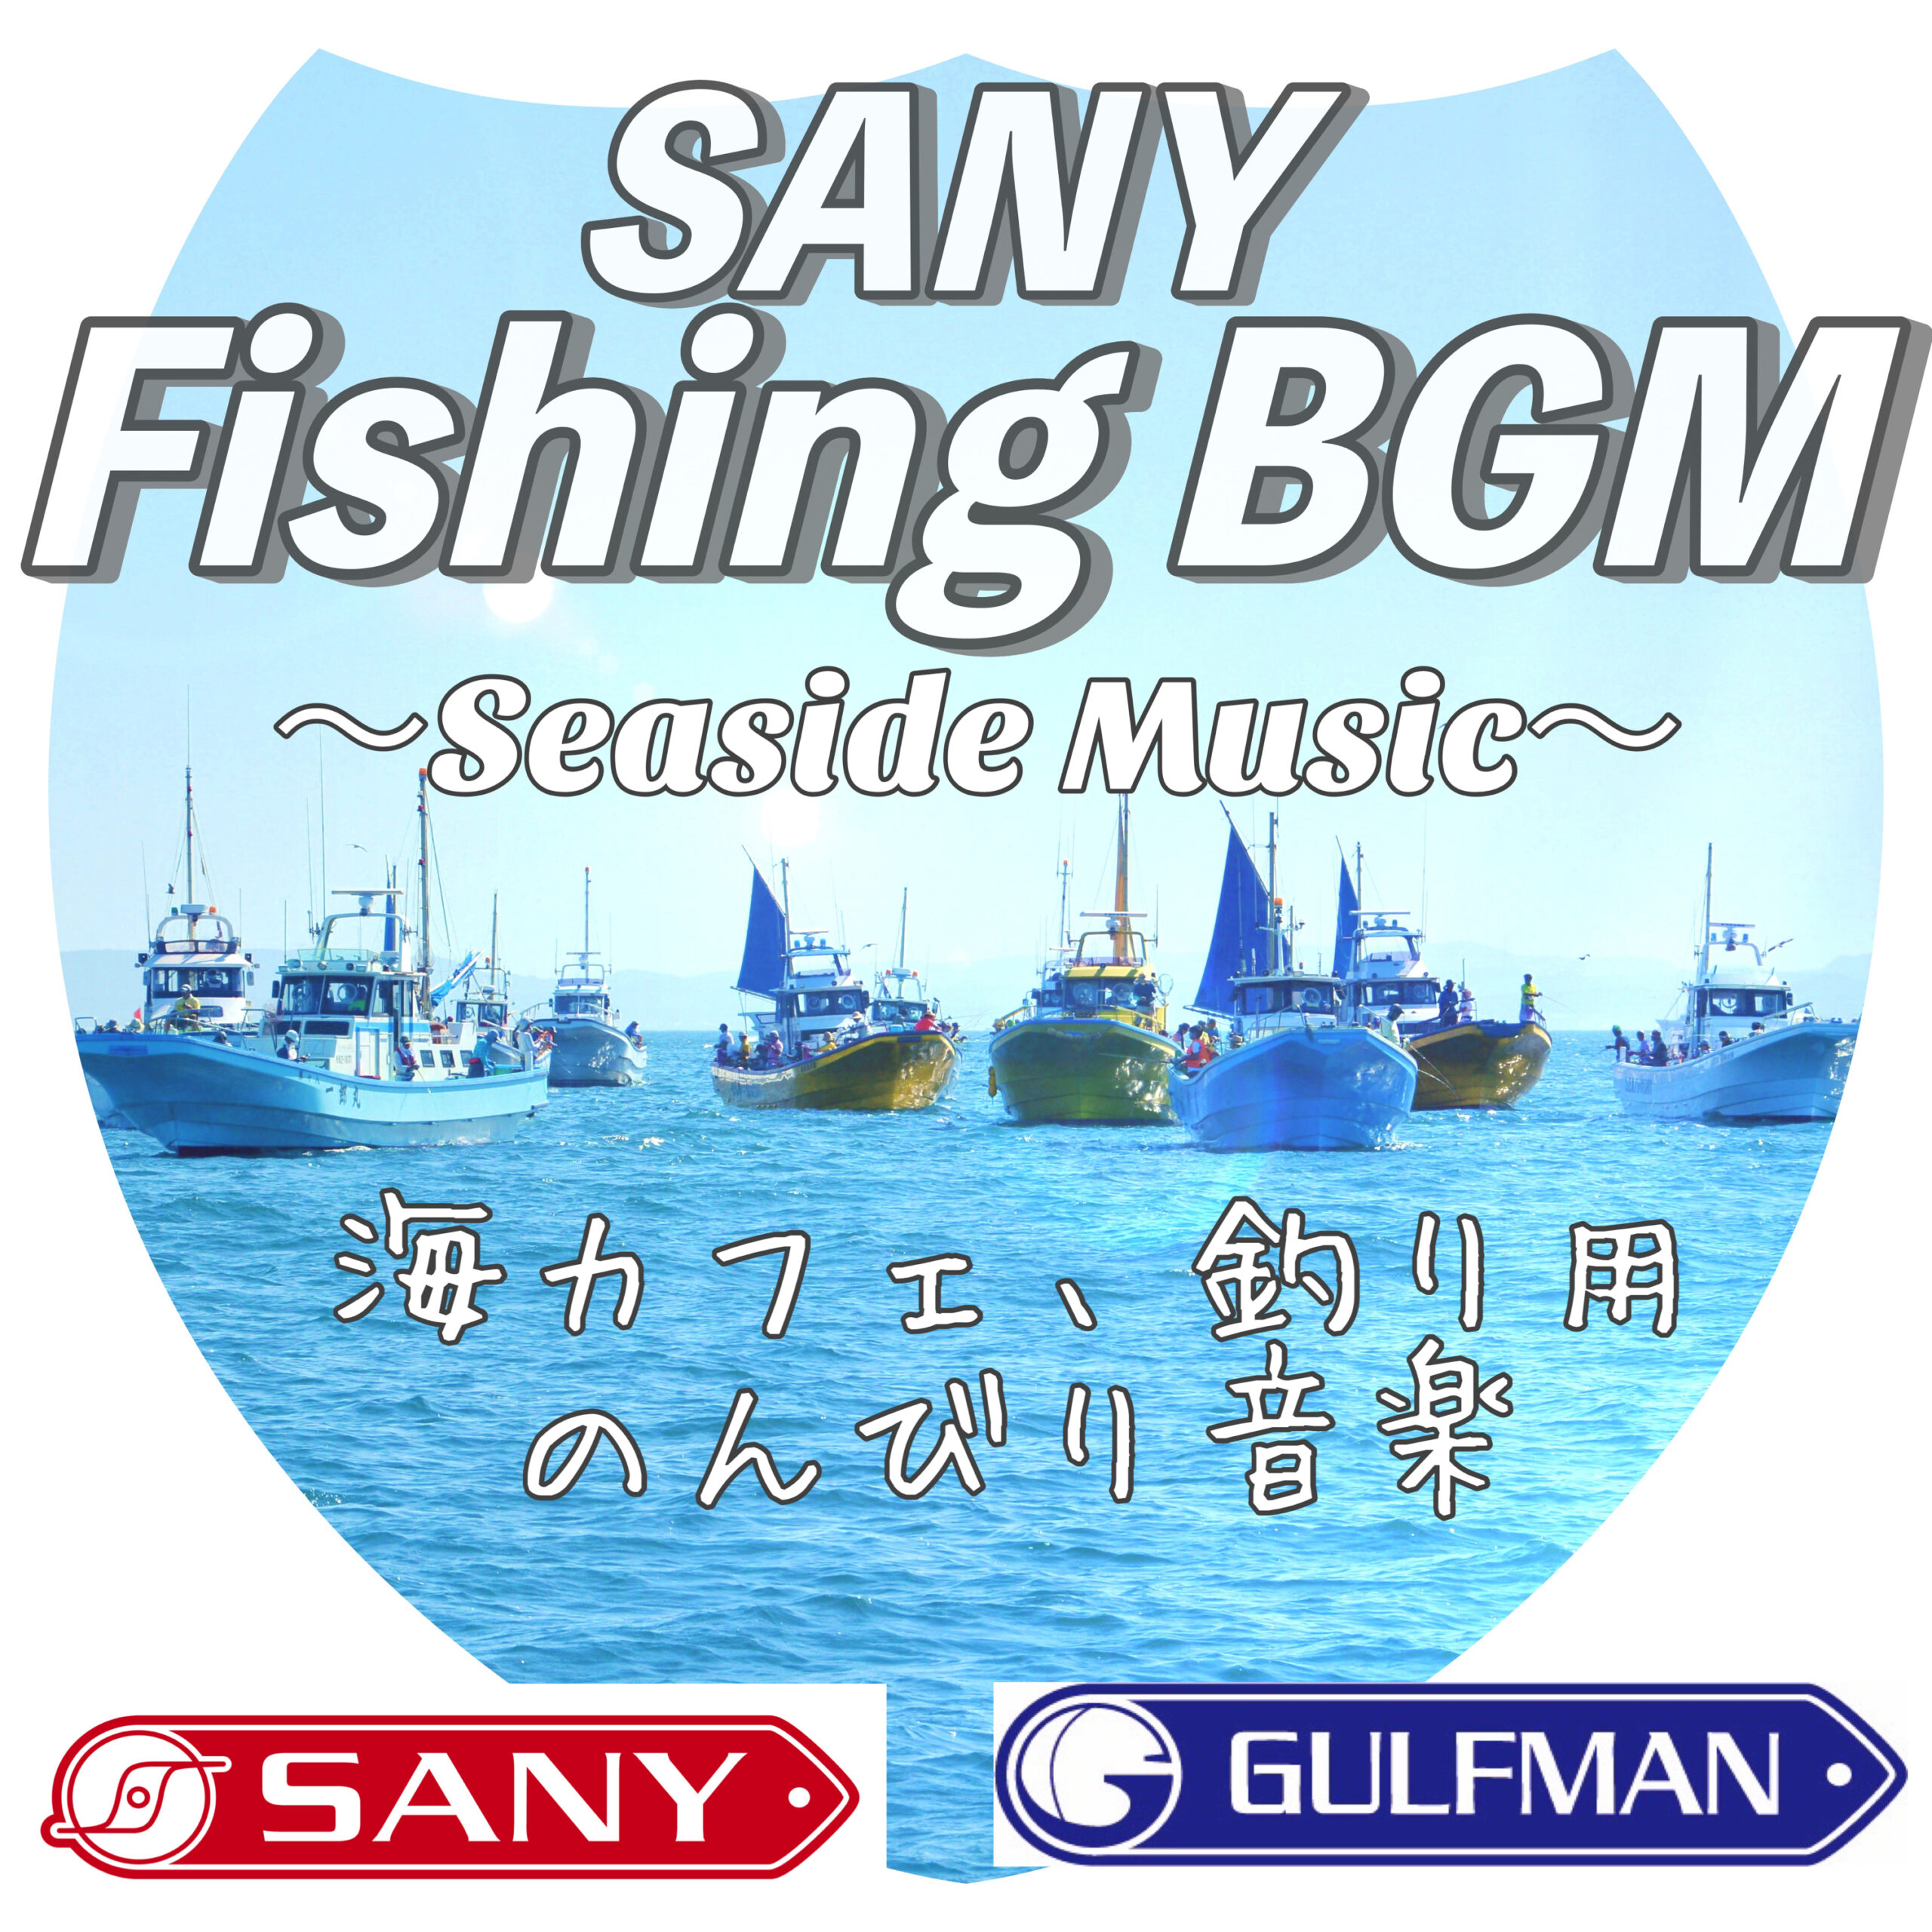 Fishing BGM 〜Seaside Music〜 海カフェ、釣り用のんびり音楽 テレワーク作業用BGM SANY Music